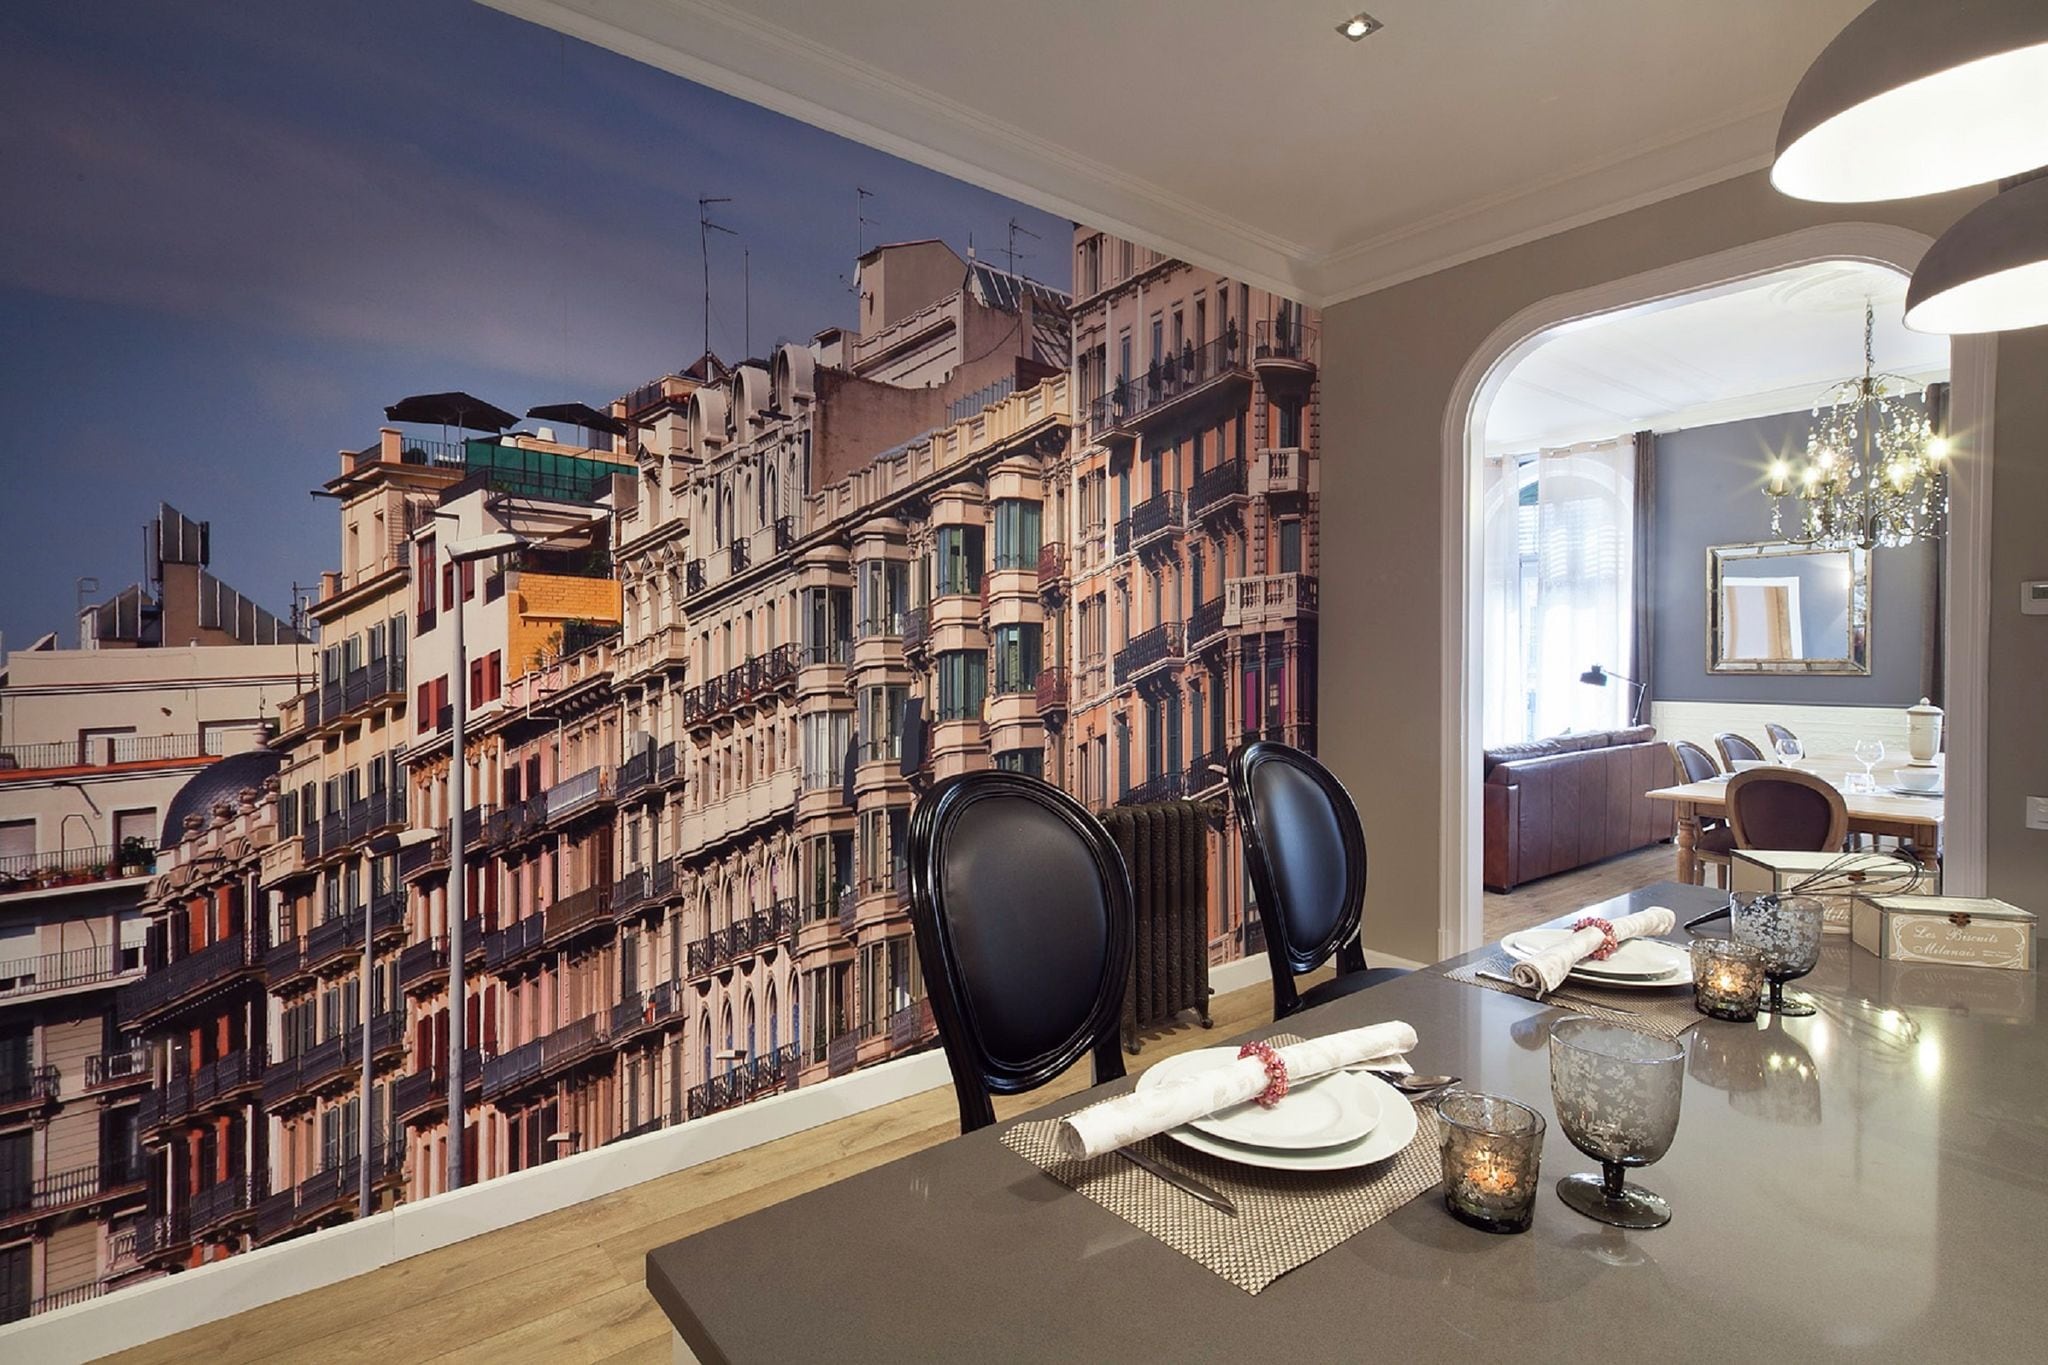 Appartement exclusif pour 4 pax dans un quartier caractéristique de Barcelone